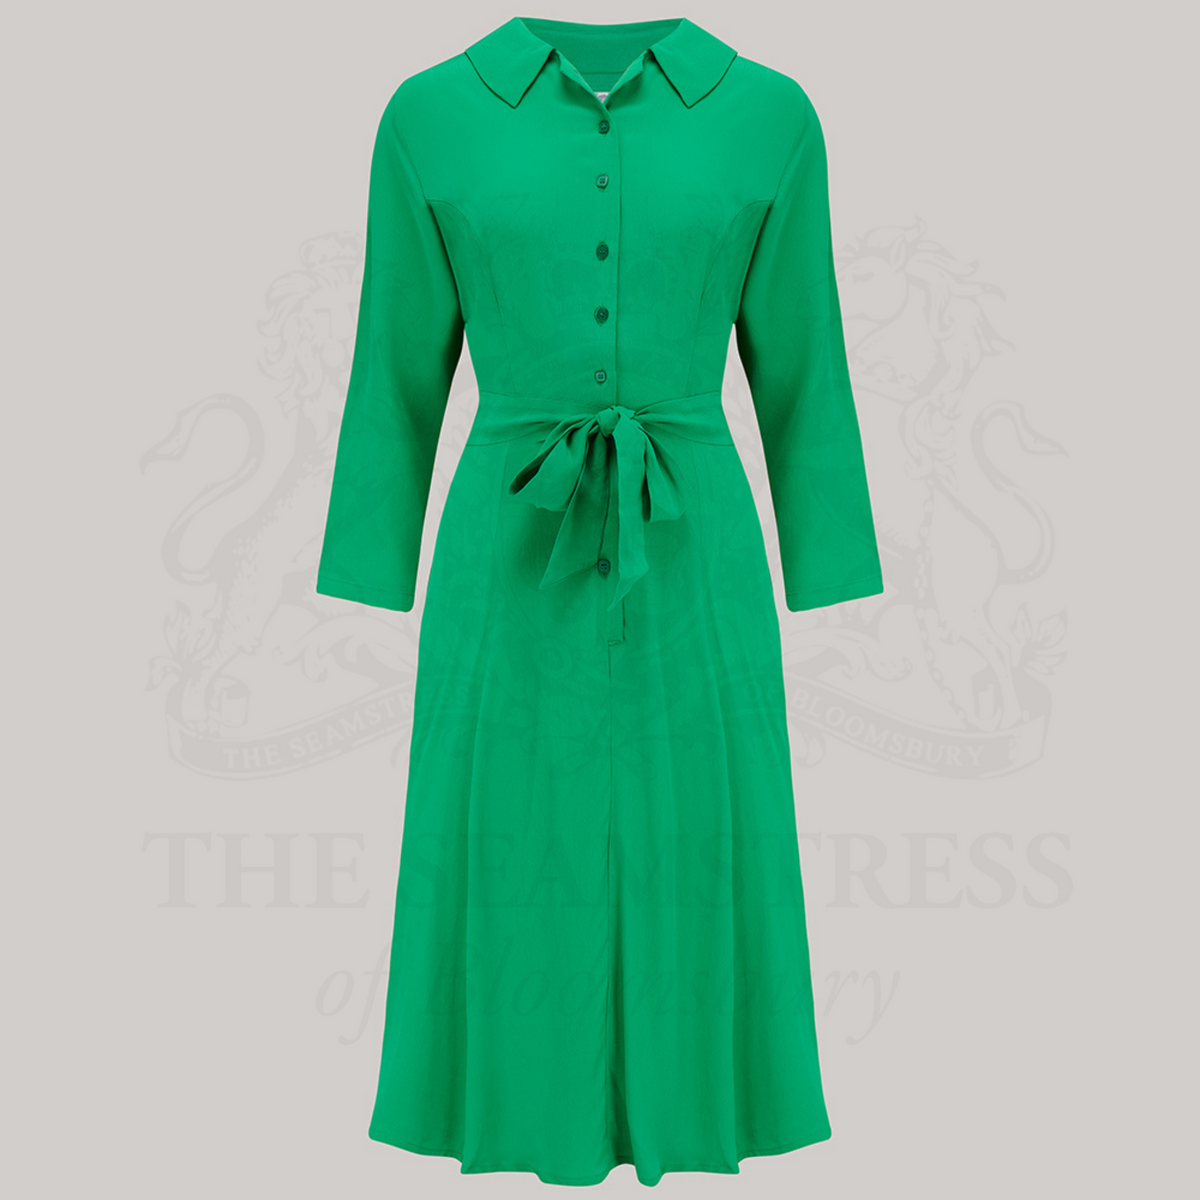 Violet Dress in Apple Green